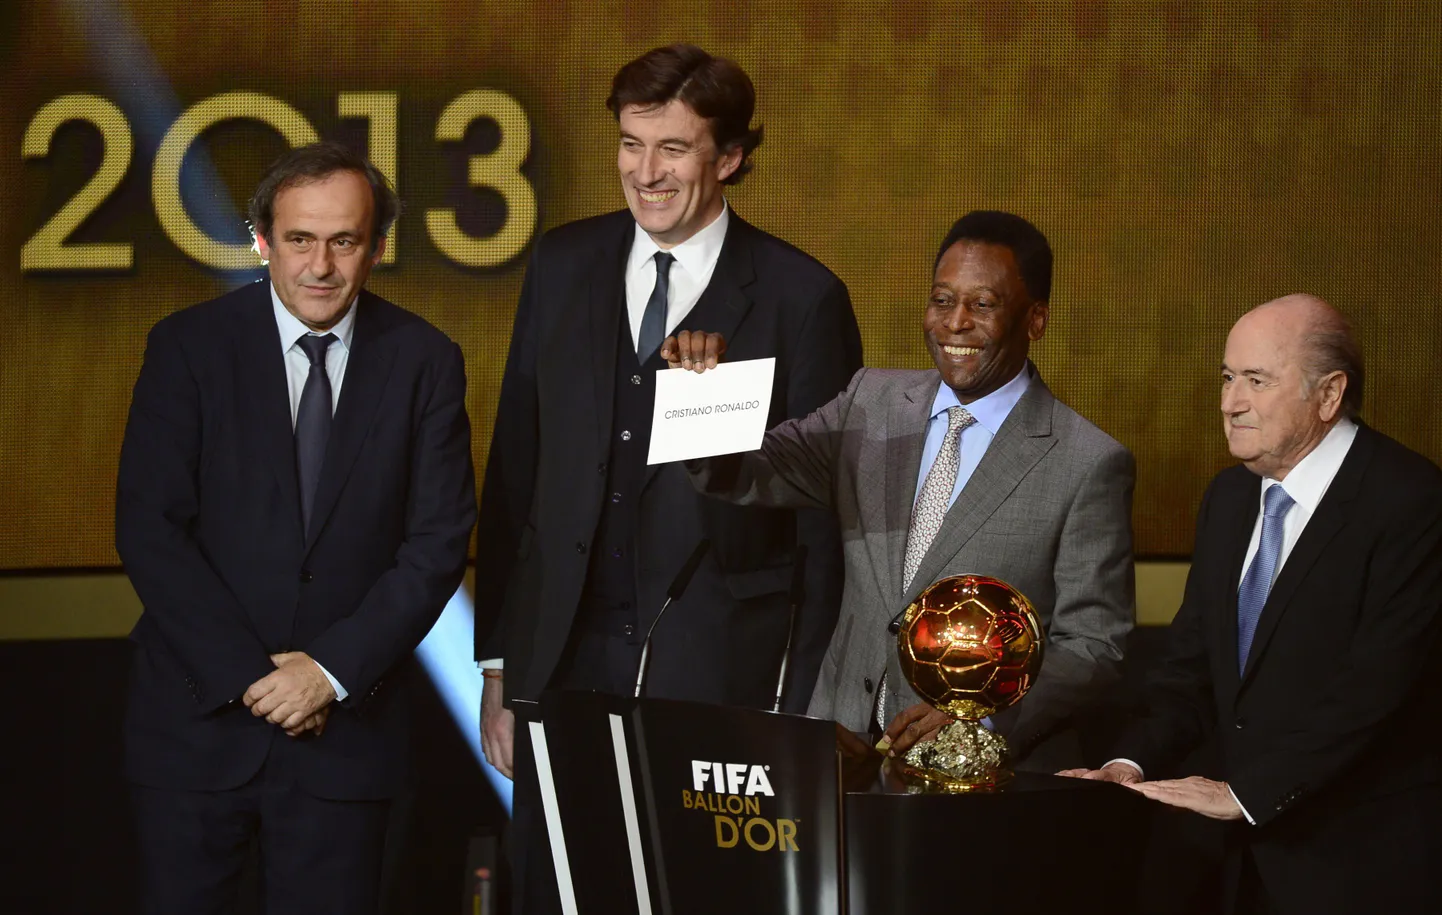 Pele avalikustab, et aasta jalgpalluriks on valitud Cristiano Ronaldo. Michel Platini (vasakul) arvates tehti aga vale valik.